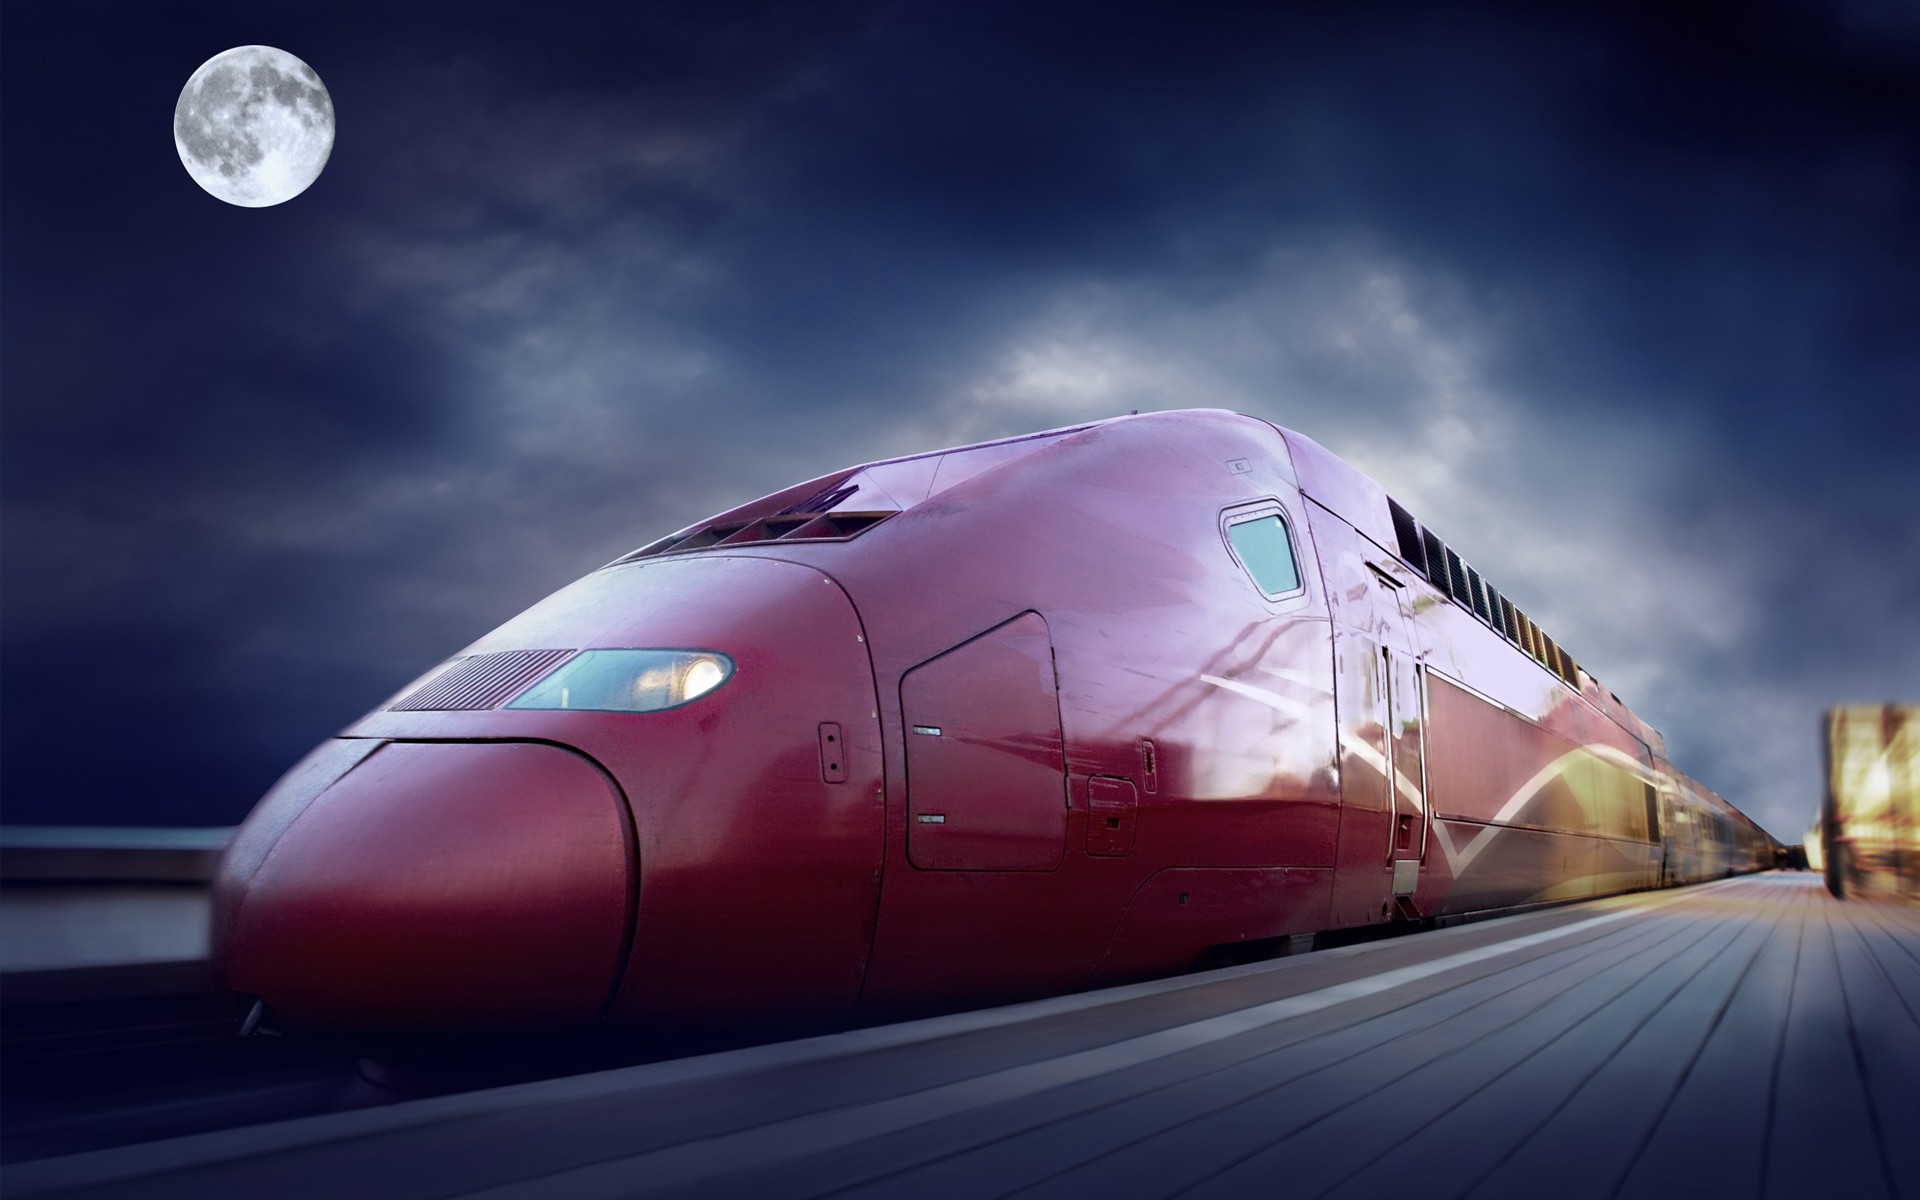 поезда, TGV, Thalys - обои на рабочий стол